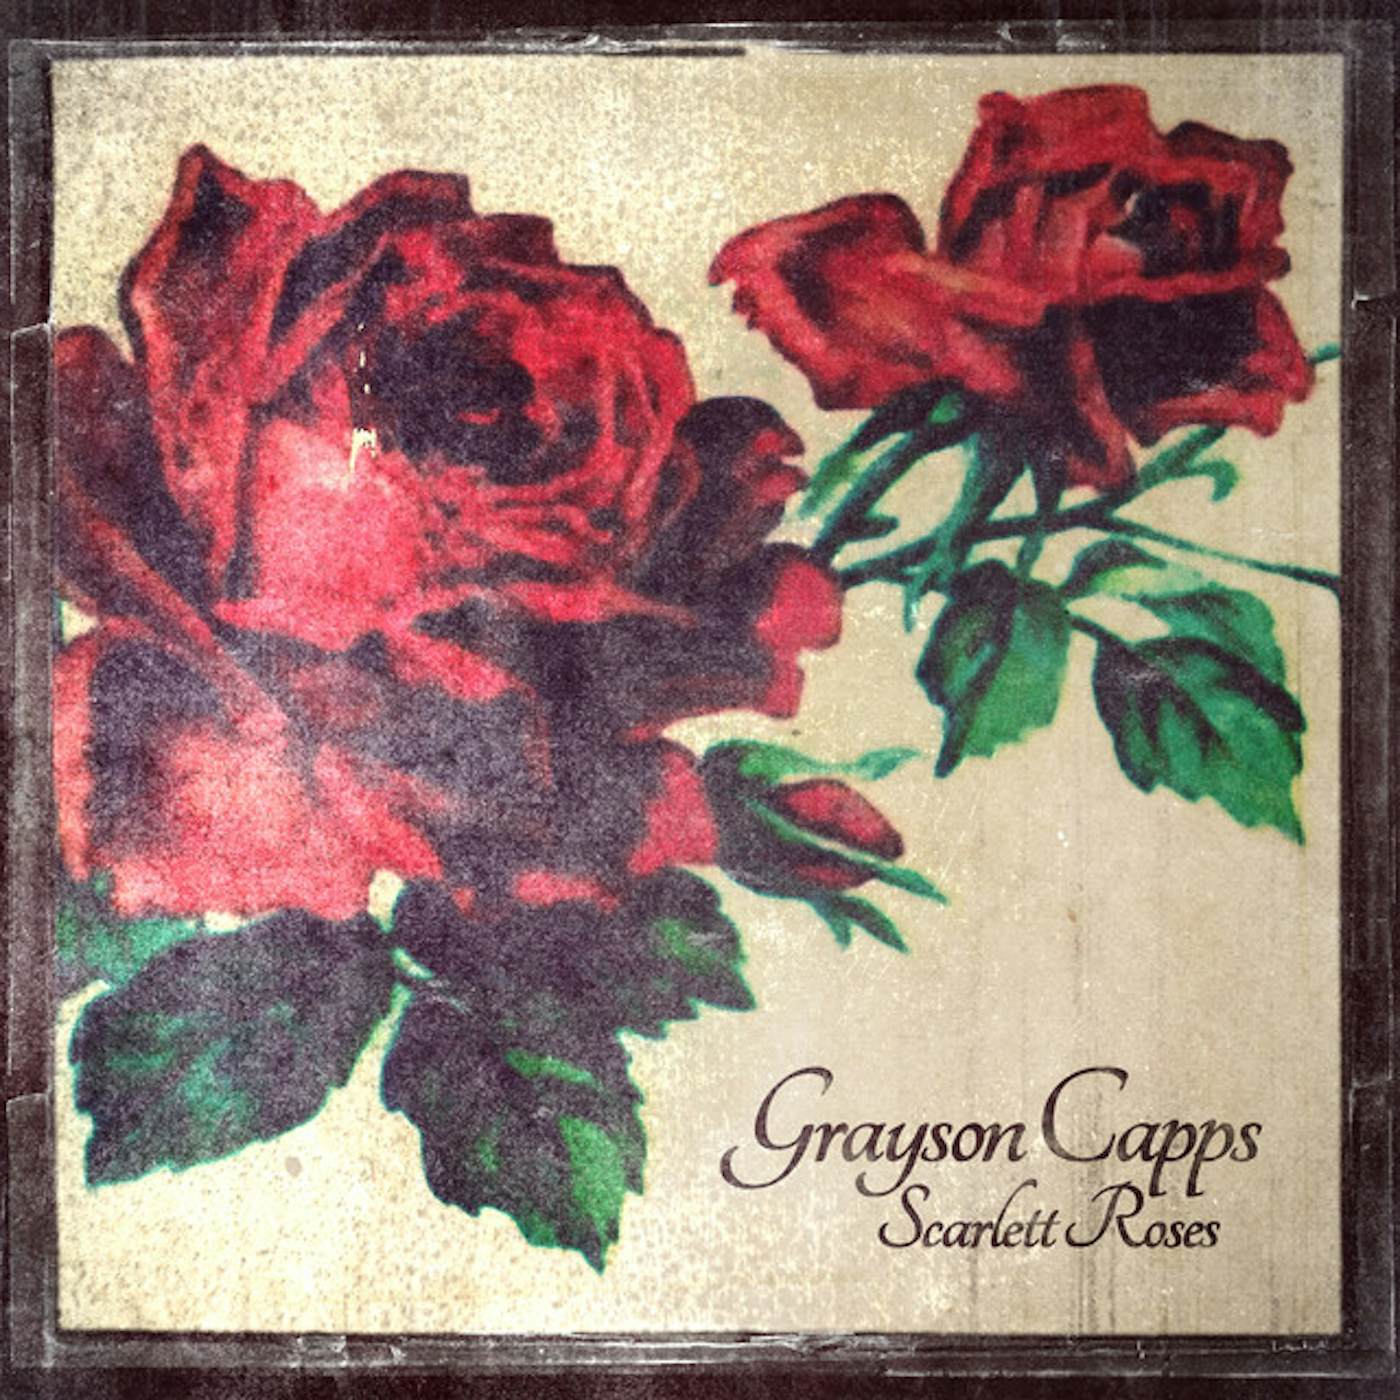 Grayson Capps Scarlett Roses Vinyl Record